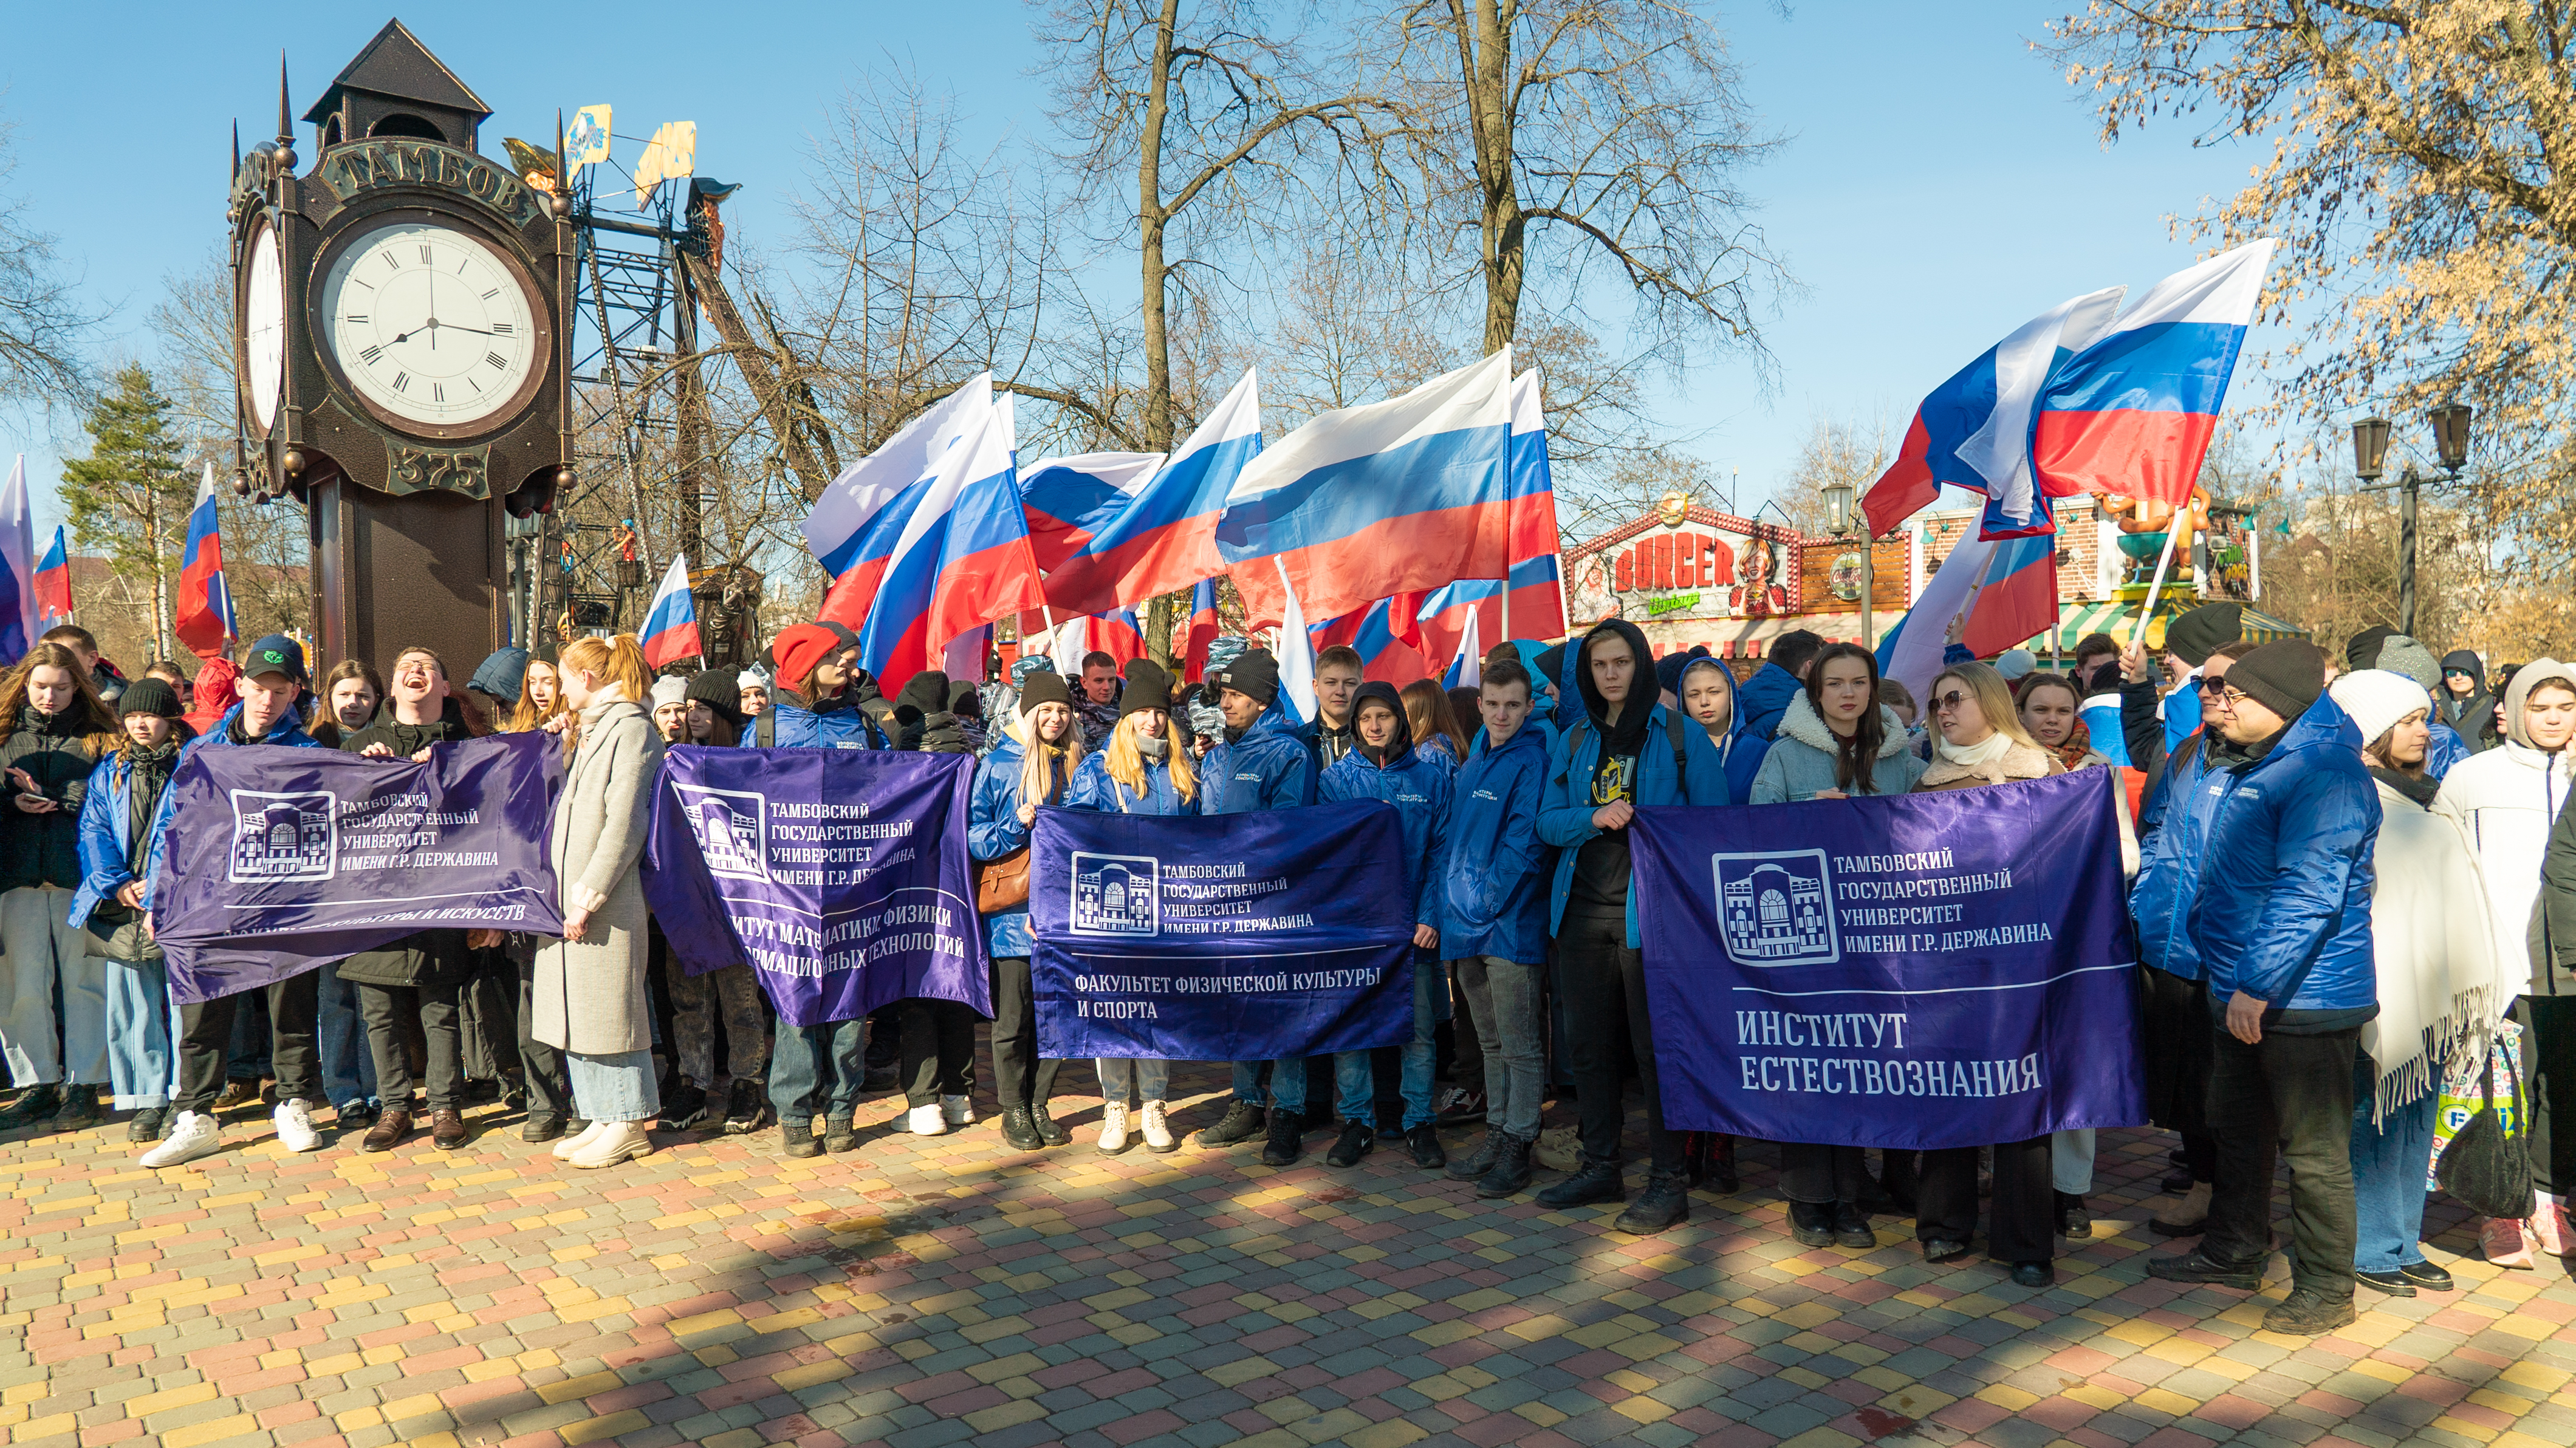 Державинцы – участники фестиваля «Крымская весна» фото анонса